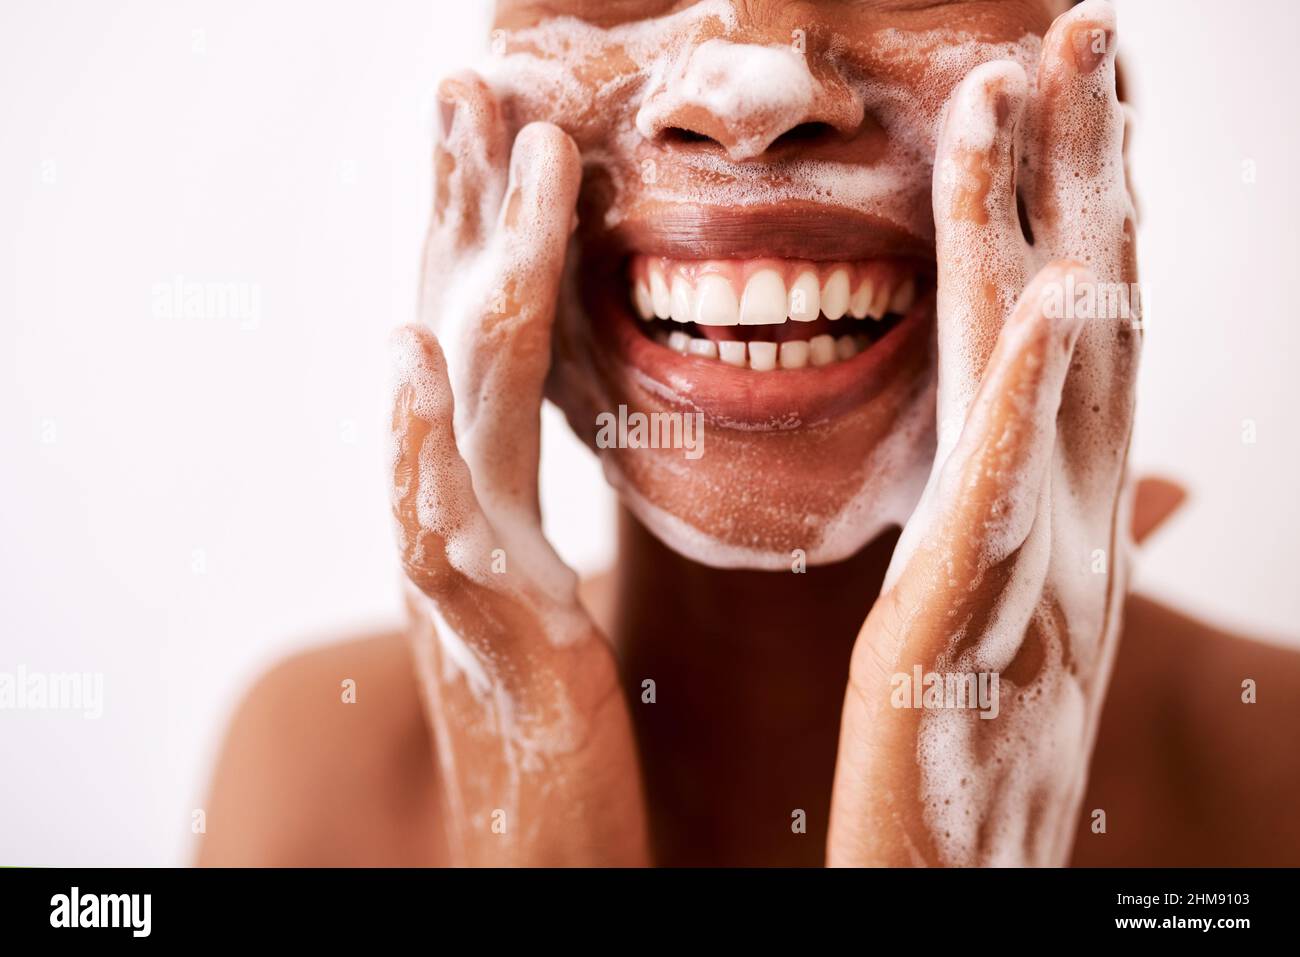 Meine Haut sauber zu halten, ist es, was sie gut aussehen lässt. Studioaufnahme einer unkenntlichen Frau, die ihr Gesicht vor weißem Hintergrund wäscht. Stockfoto